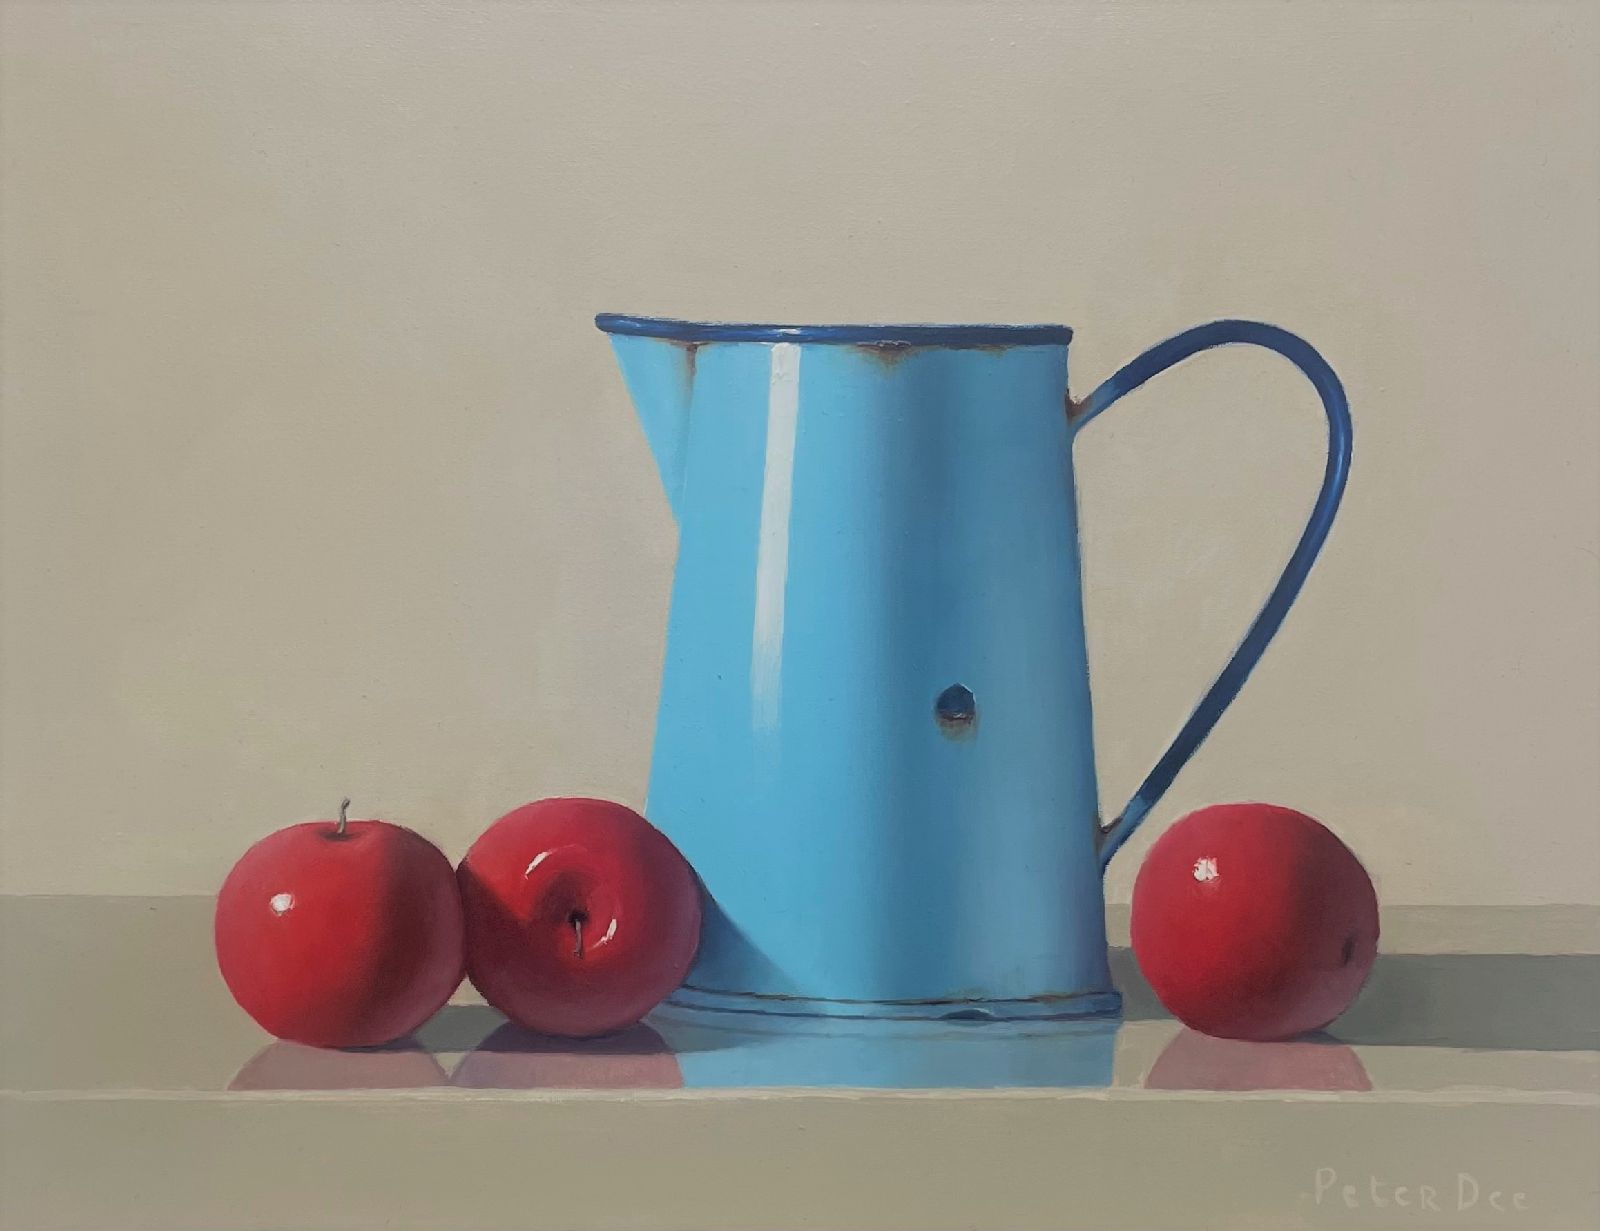  Blue Enamelware Jug with Red Apples  by Peter Dee